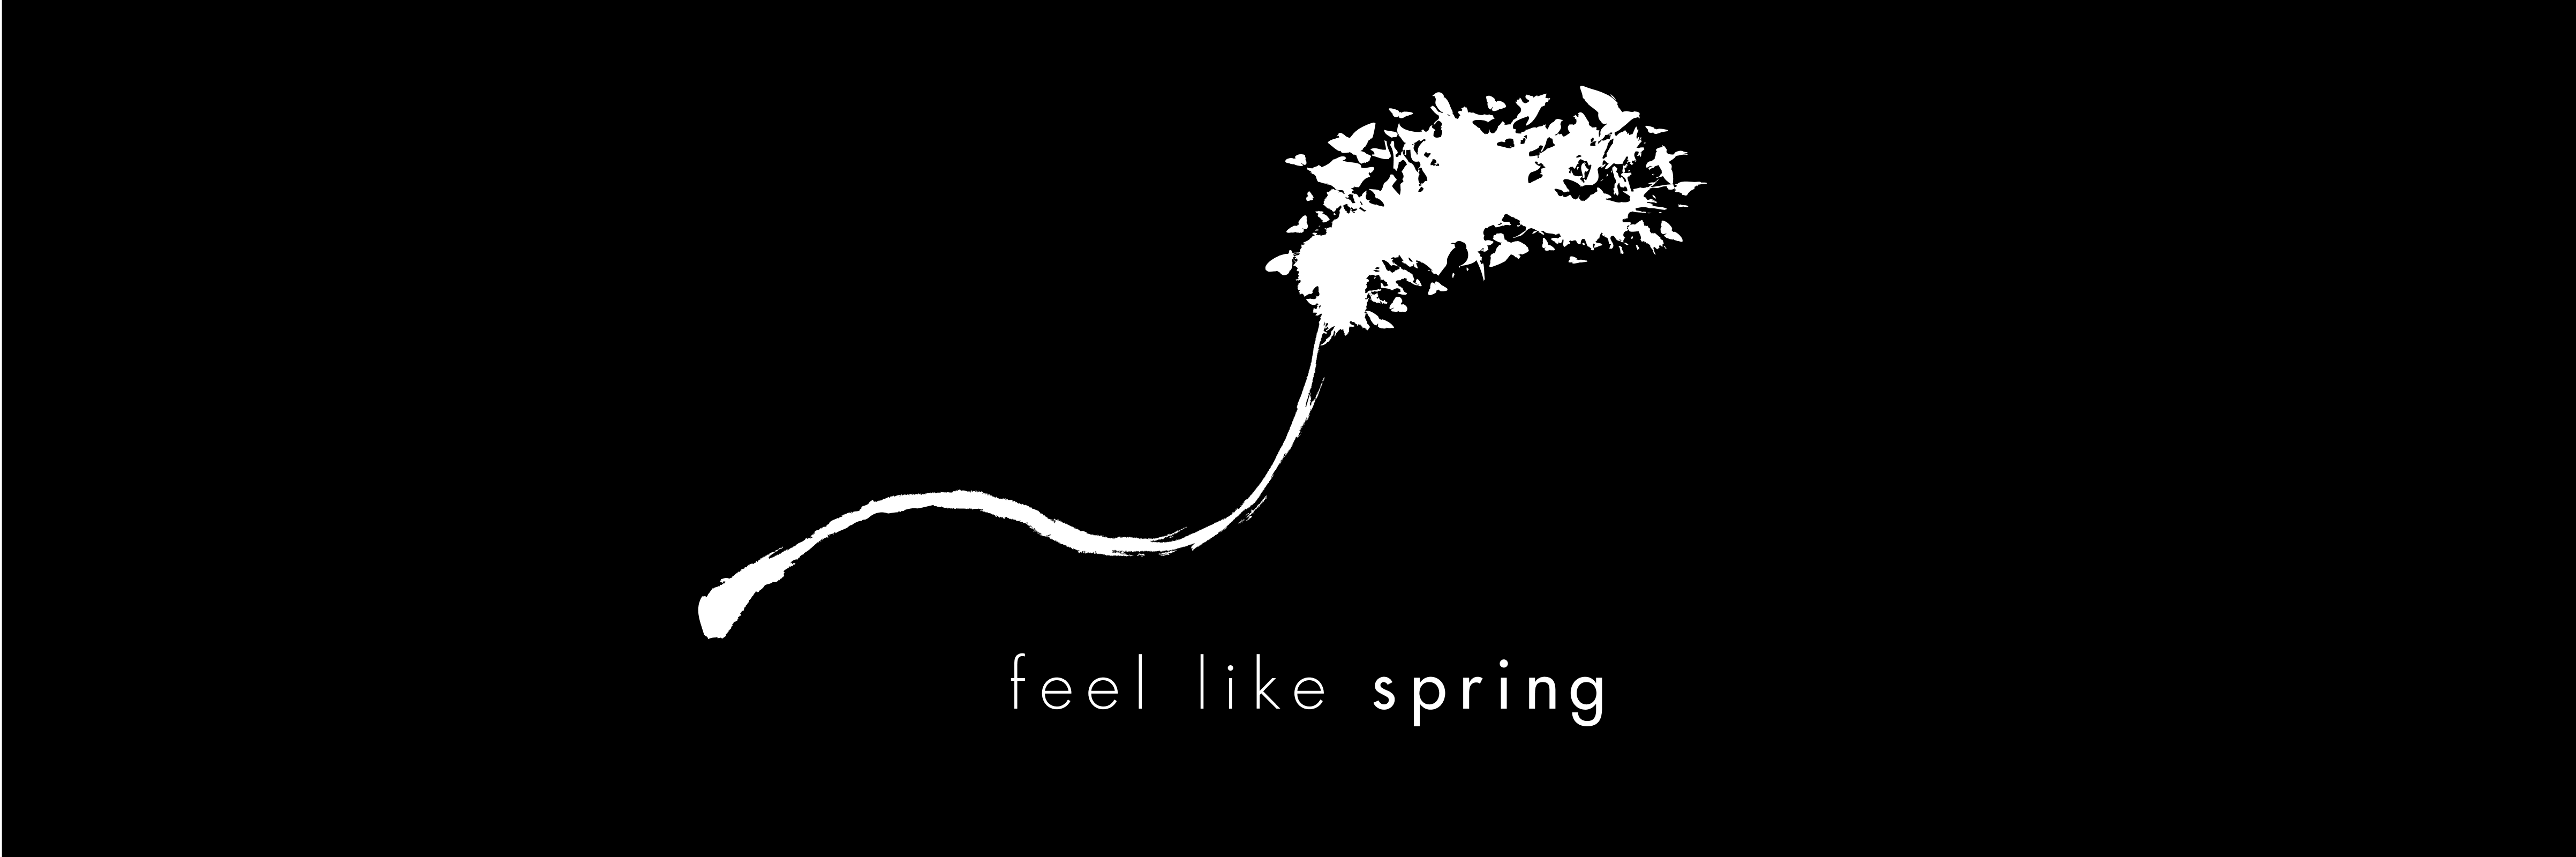 simon-p-coyle-branding-logo-design-2010-feel-like-spring